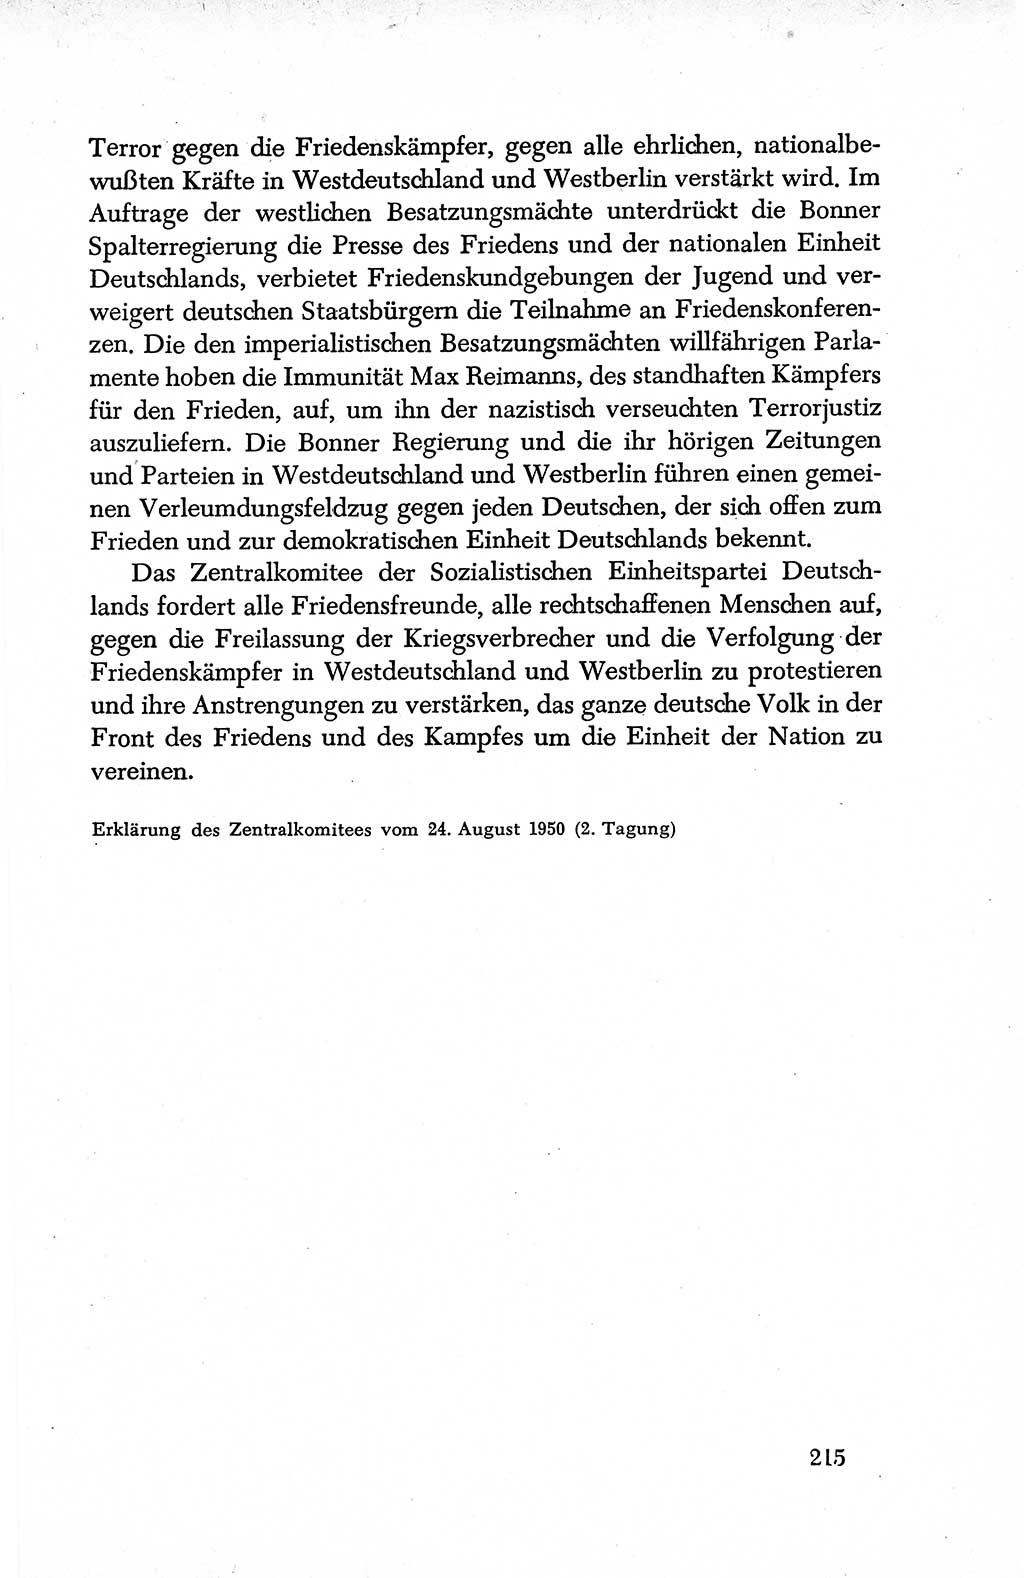 Dokumente der Sozialistischen Einheitspartei Deutschlands (SED) [Deutsche Demokratische Republik (DDR)] 1950-1952, Seite 215 (Dok. SED DDR 1950-1952, S. 215)